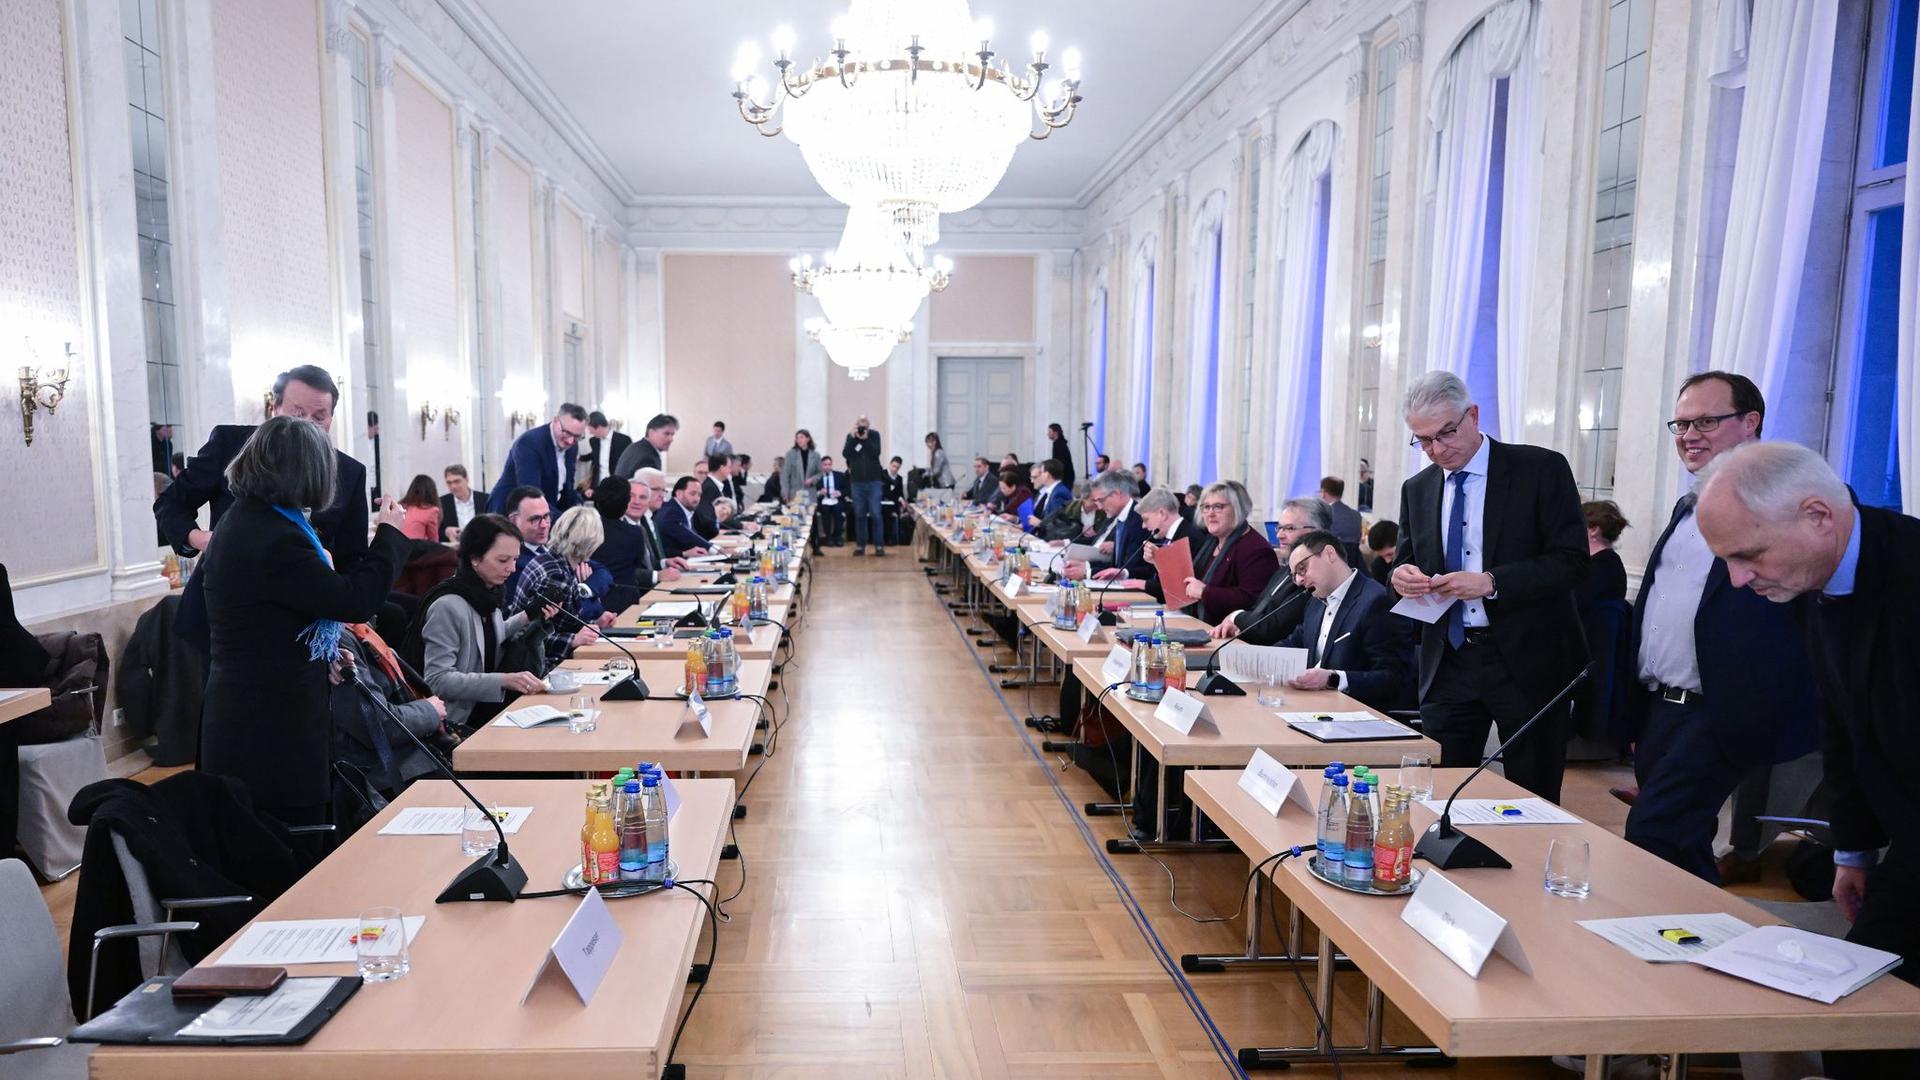 Politiker und Vertreter von Kommunen und Verbänden sitzen bei einem großen Flüchtlings-Gipfel.